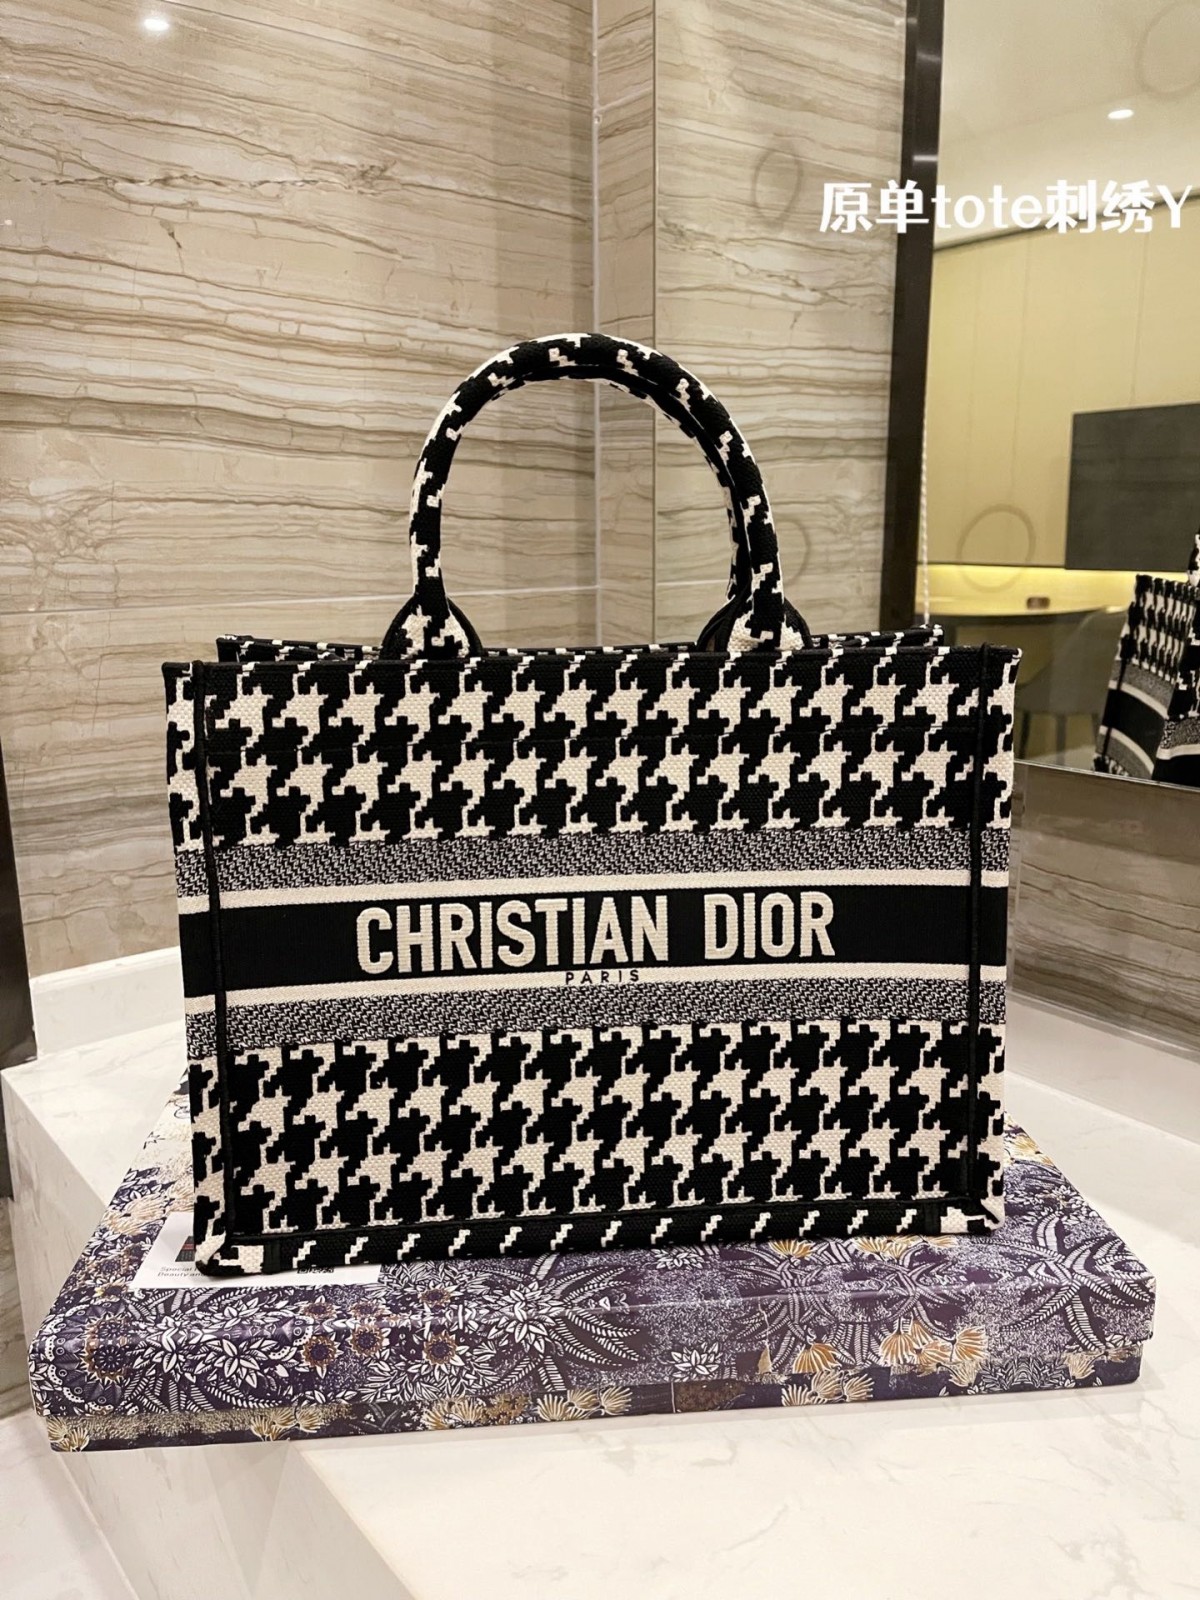 Одна з моїх улюблених копій сумок: Dior Tote (останнє 2022 року) - Інтернет-магазин підробленої сумки Louis Vuitton найкращої якості, дизайнерська копія сумки ru